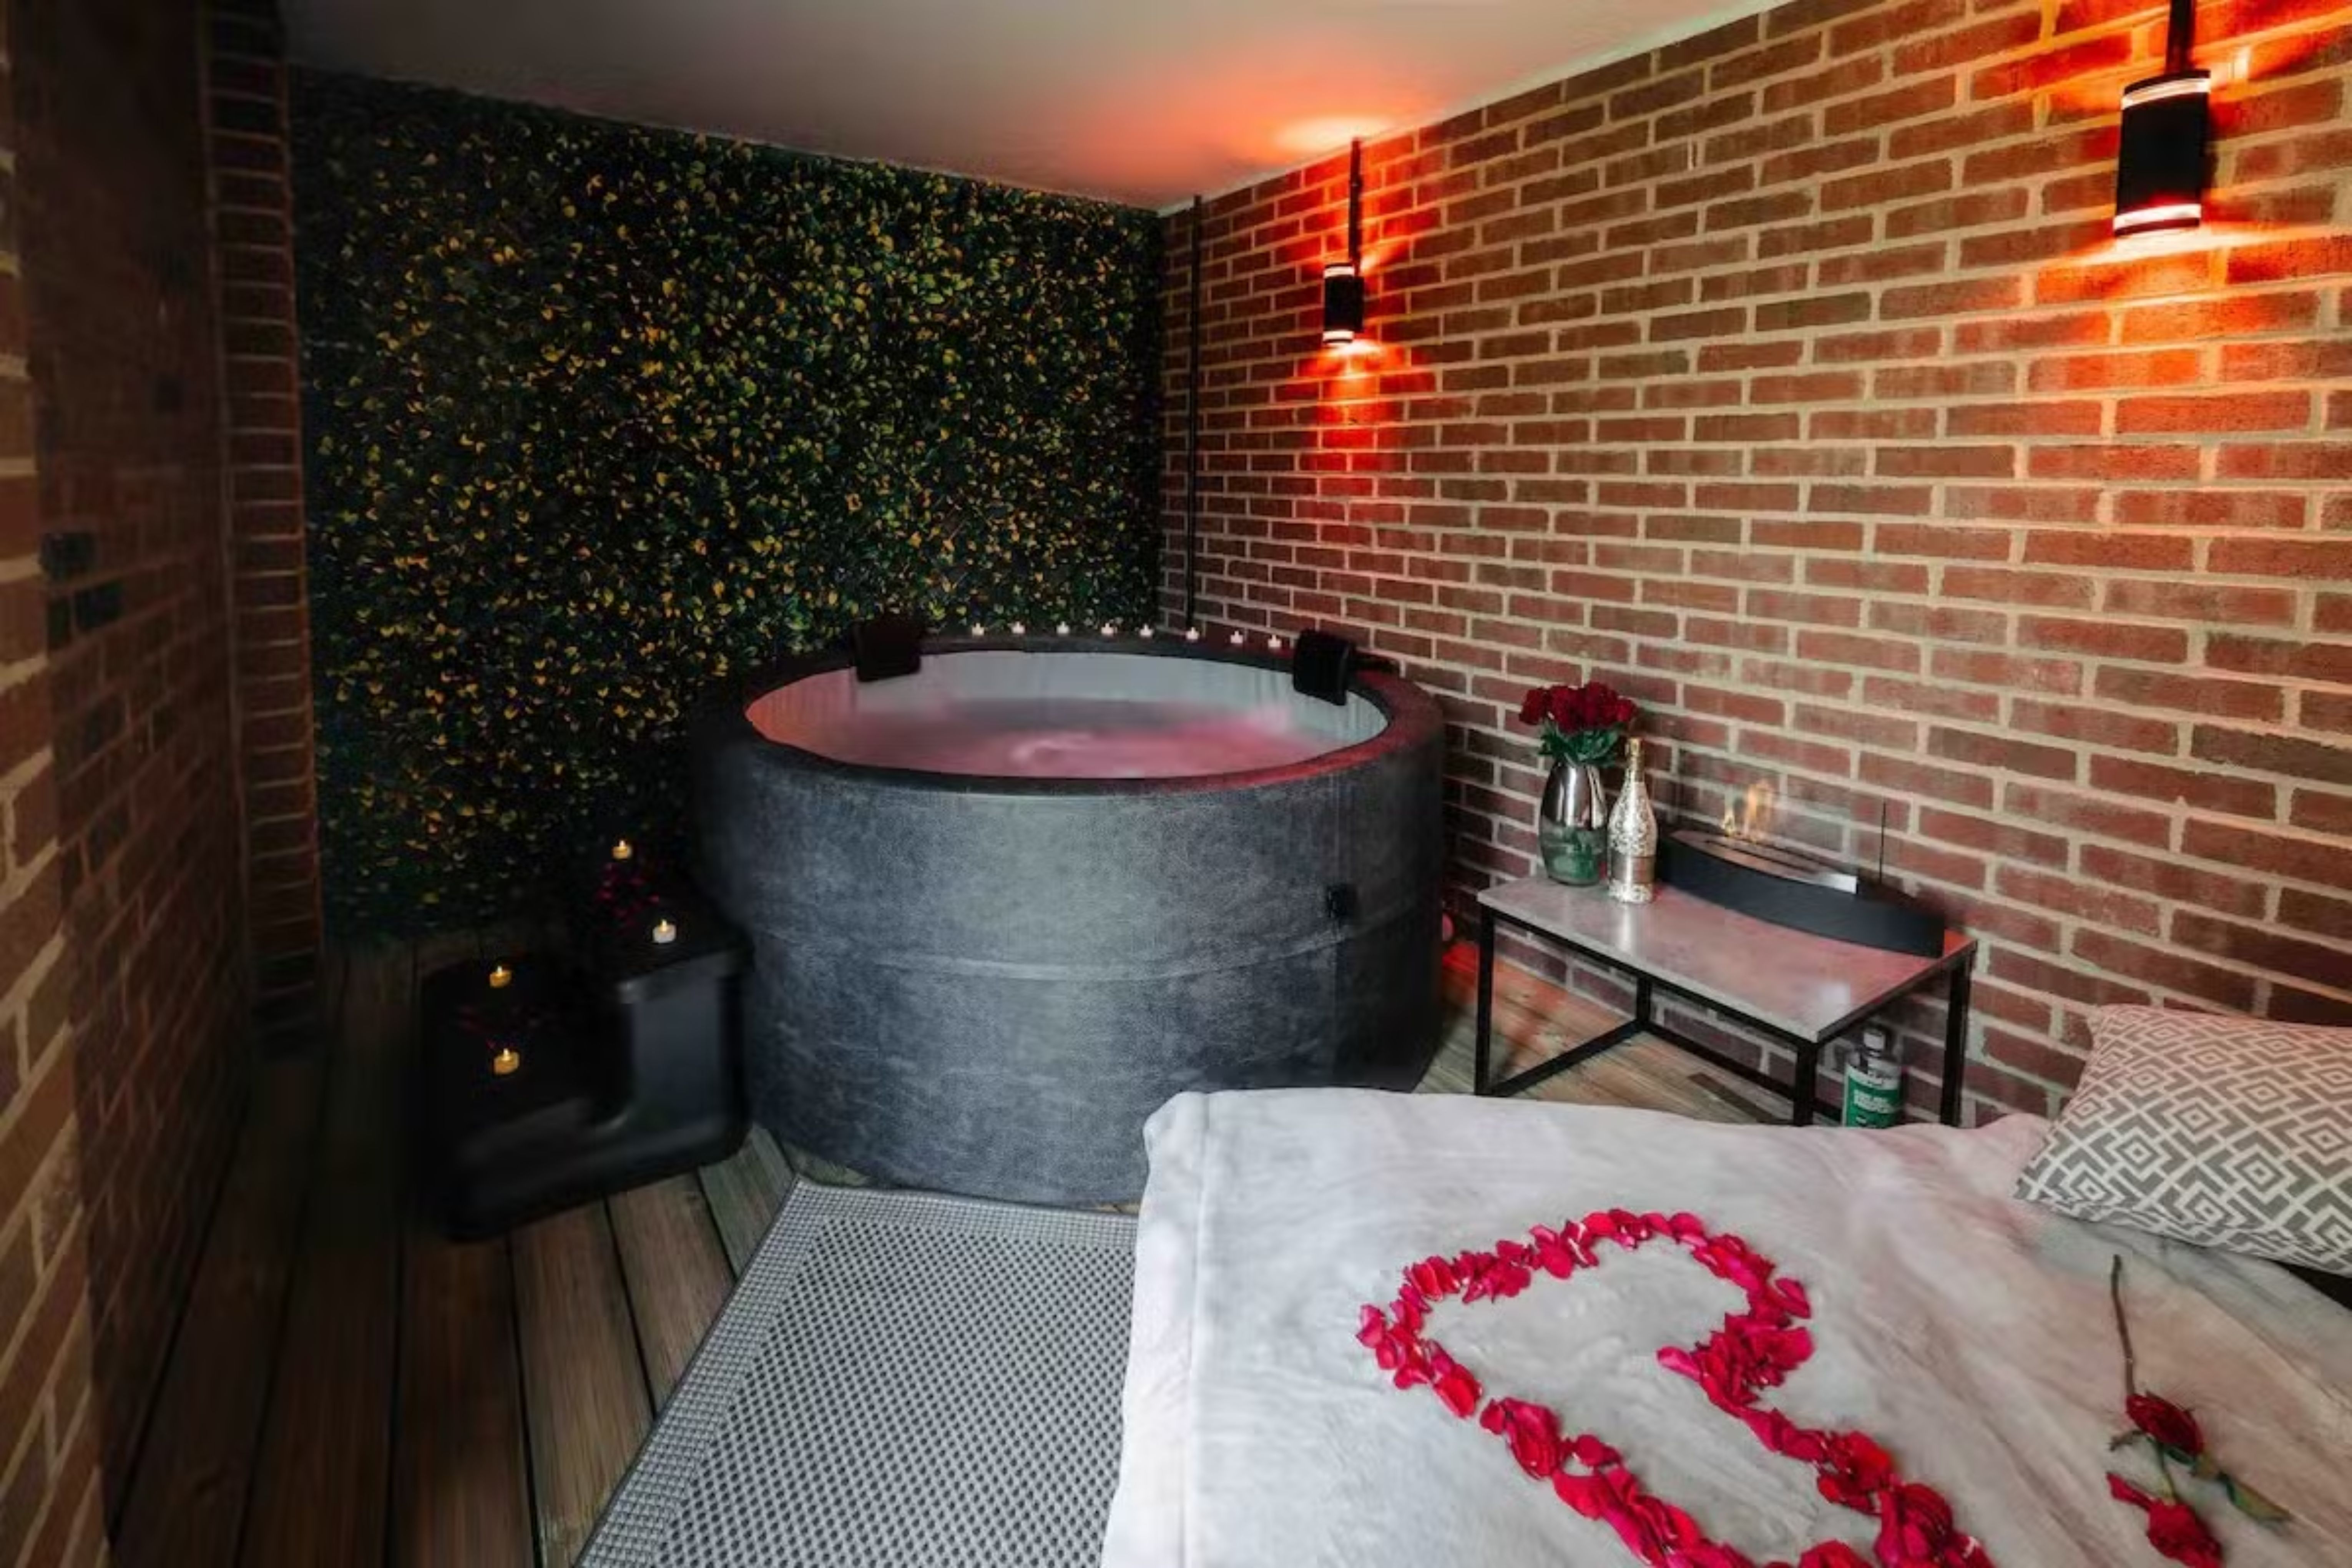 Reserve agora sua estadia na Casa Amor e desfrute de uma experiência romântica e provocante por 250 libras a diária Reprodução/Airbnb